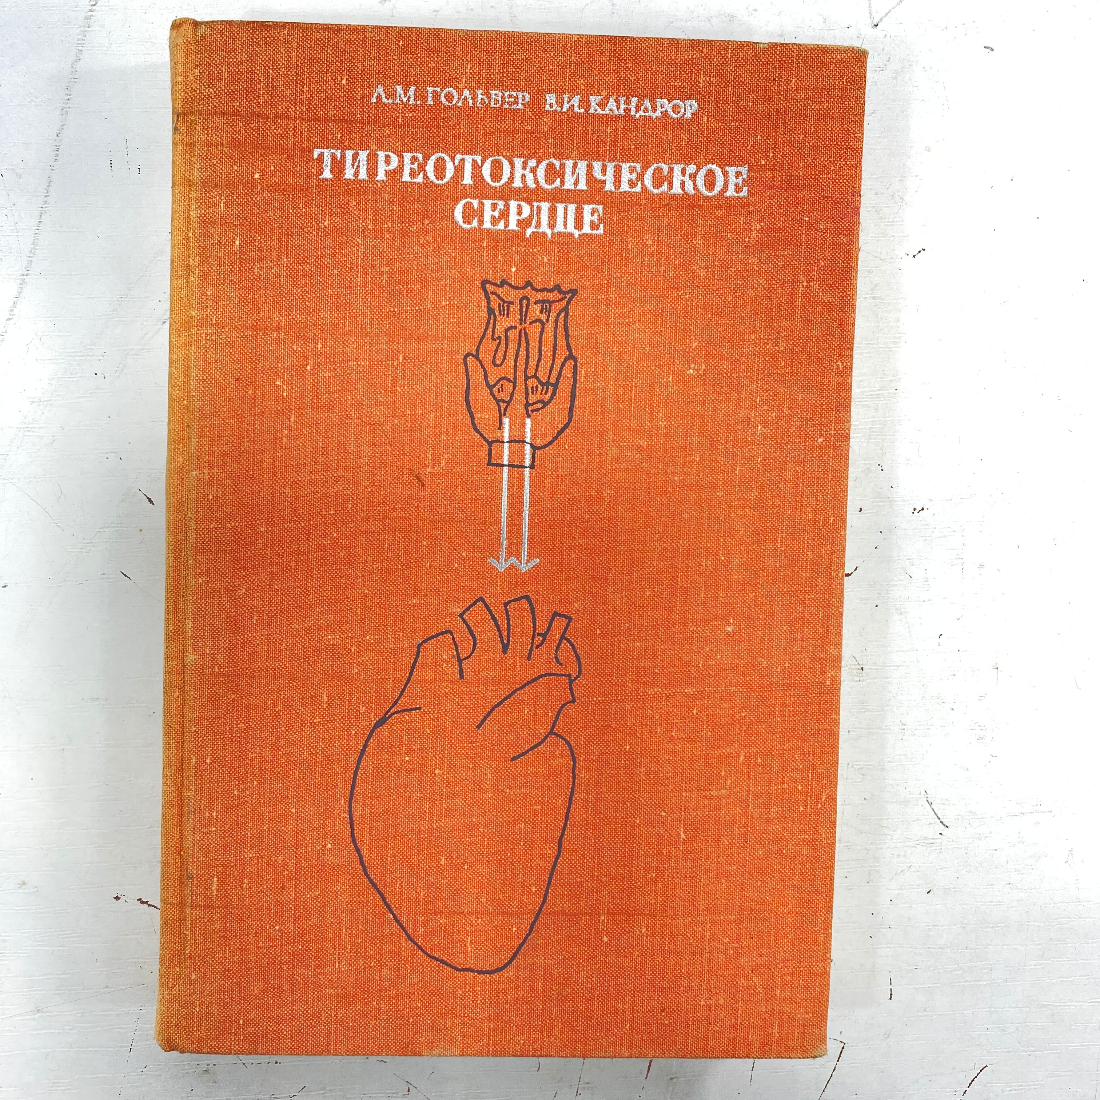 "Тиреотоксическое сердце" СССР книга. Картинка 1